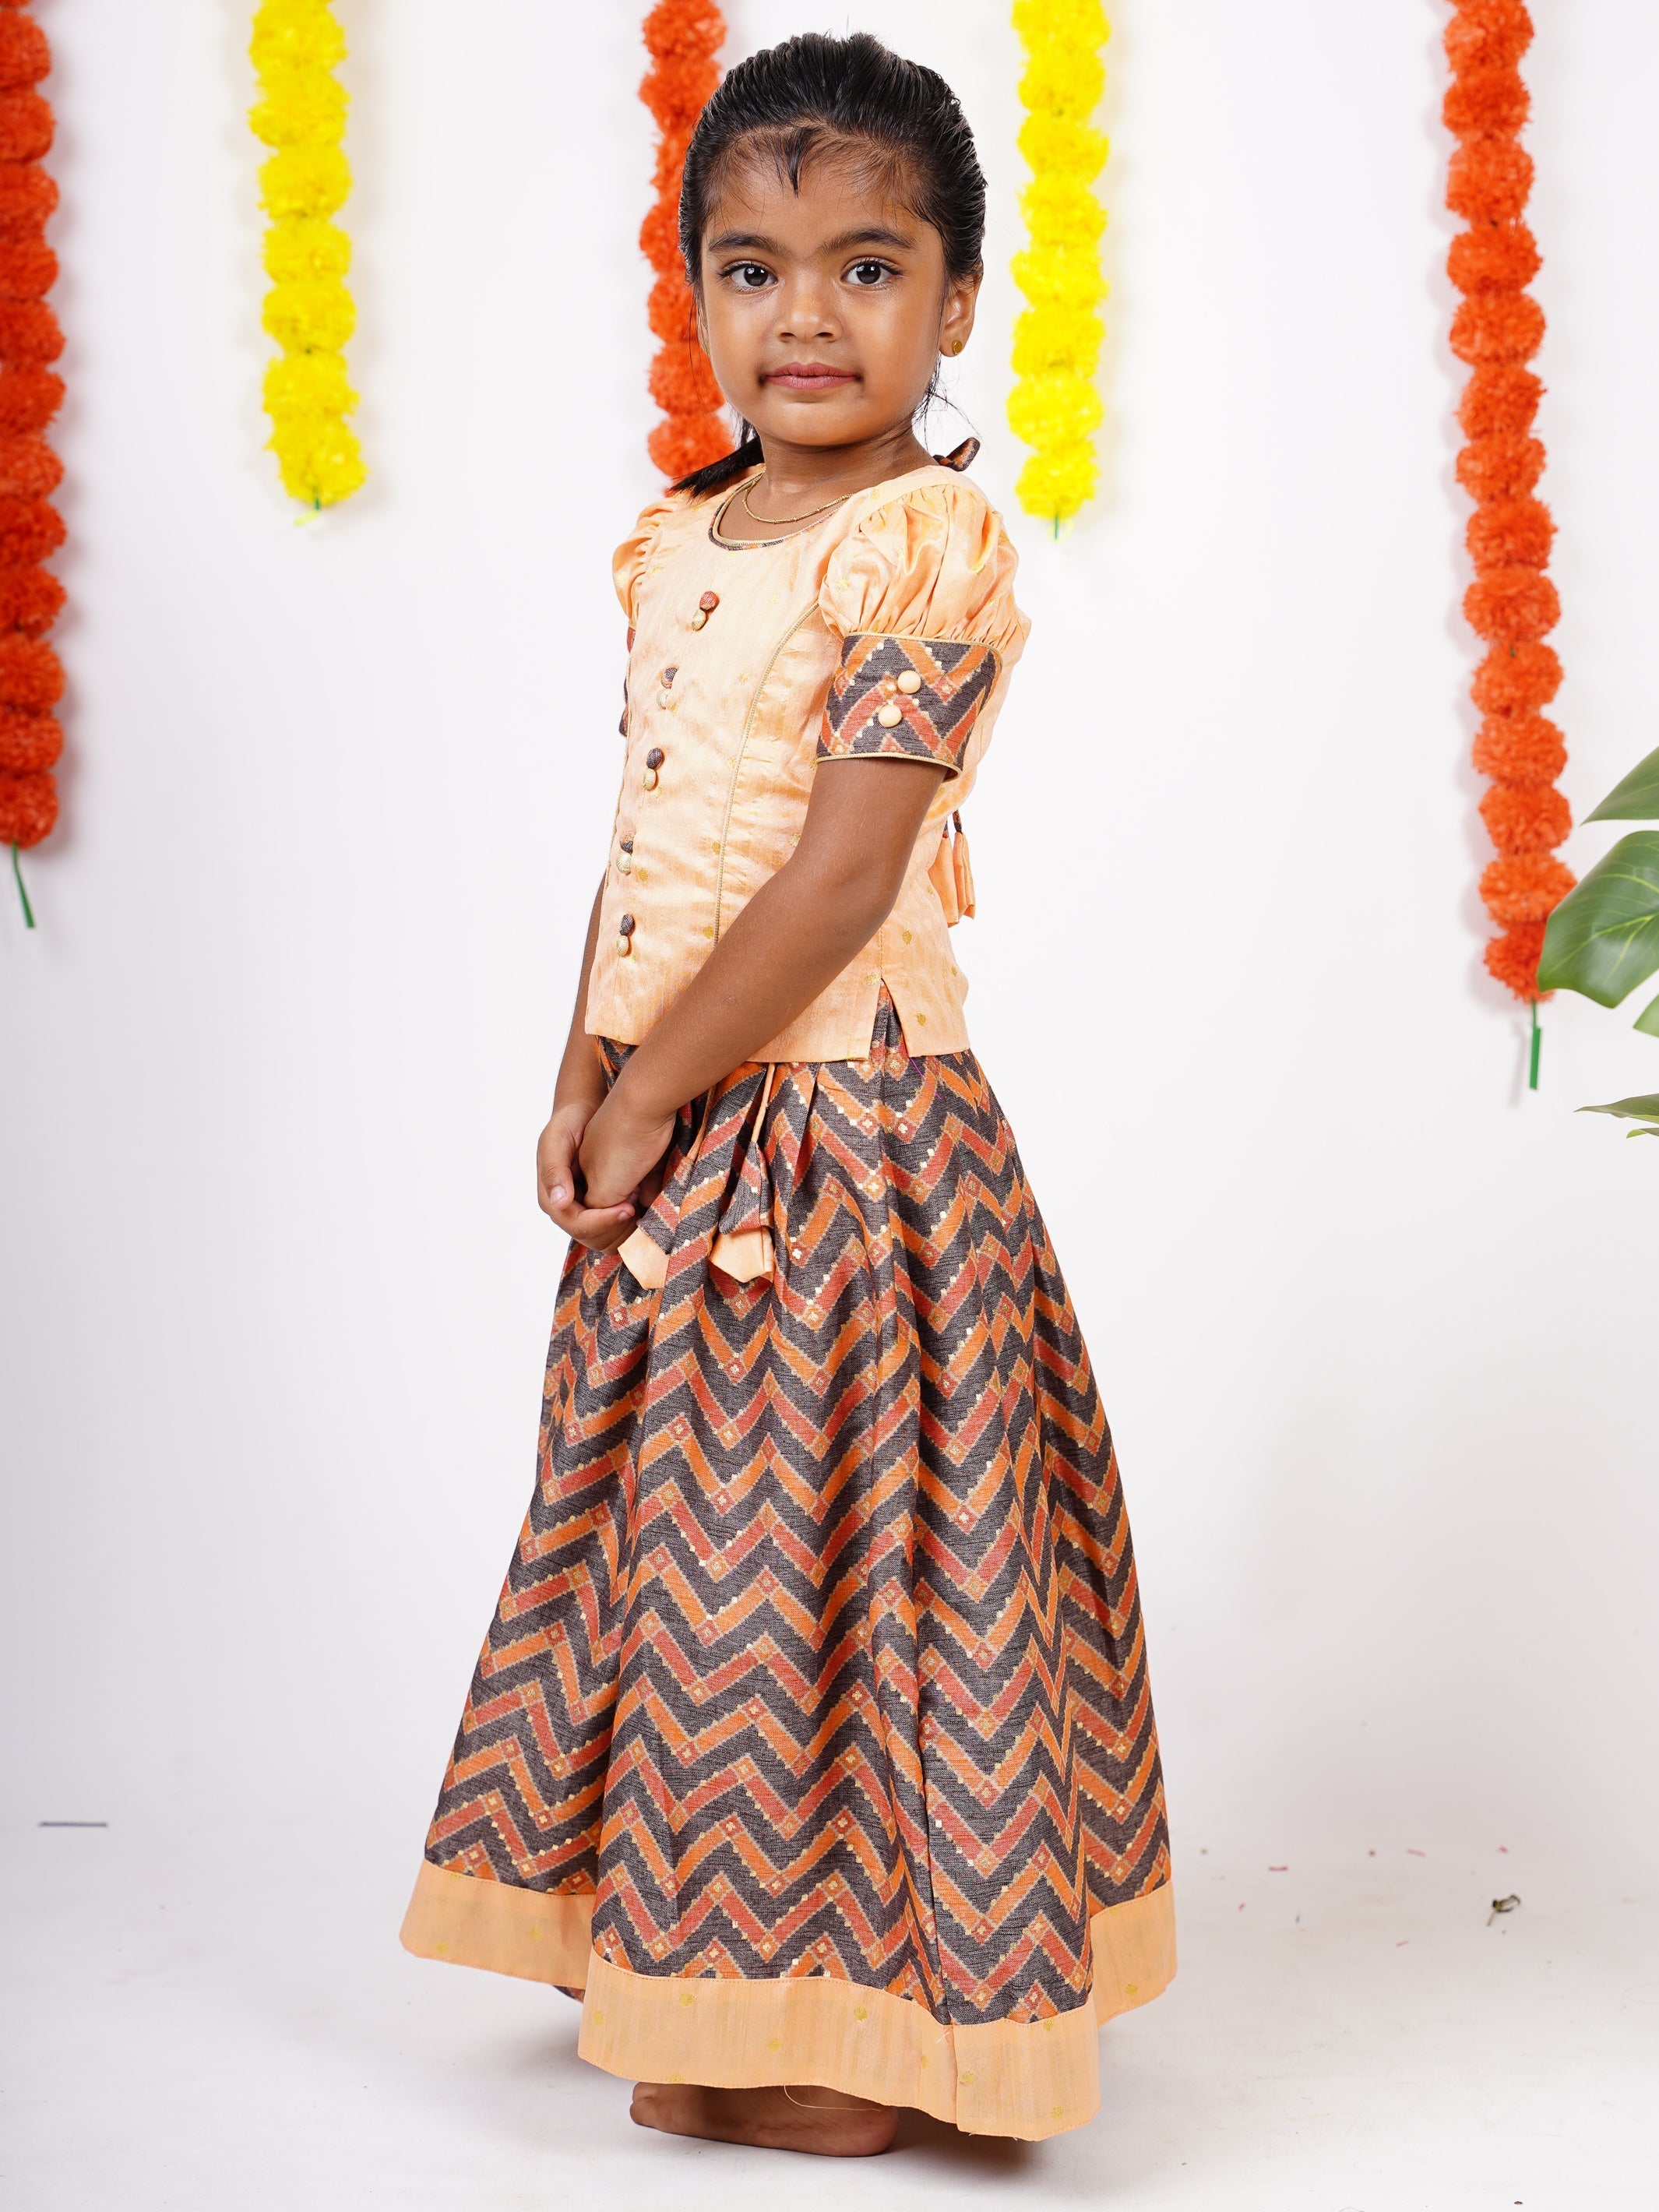 Buy Rechesta New south Indian traditional pattu pavadai pattu langa  Jecquard Lehenga choli for girls dress (Gold) (6-12 Months) at Amazon.in